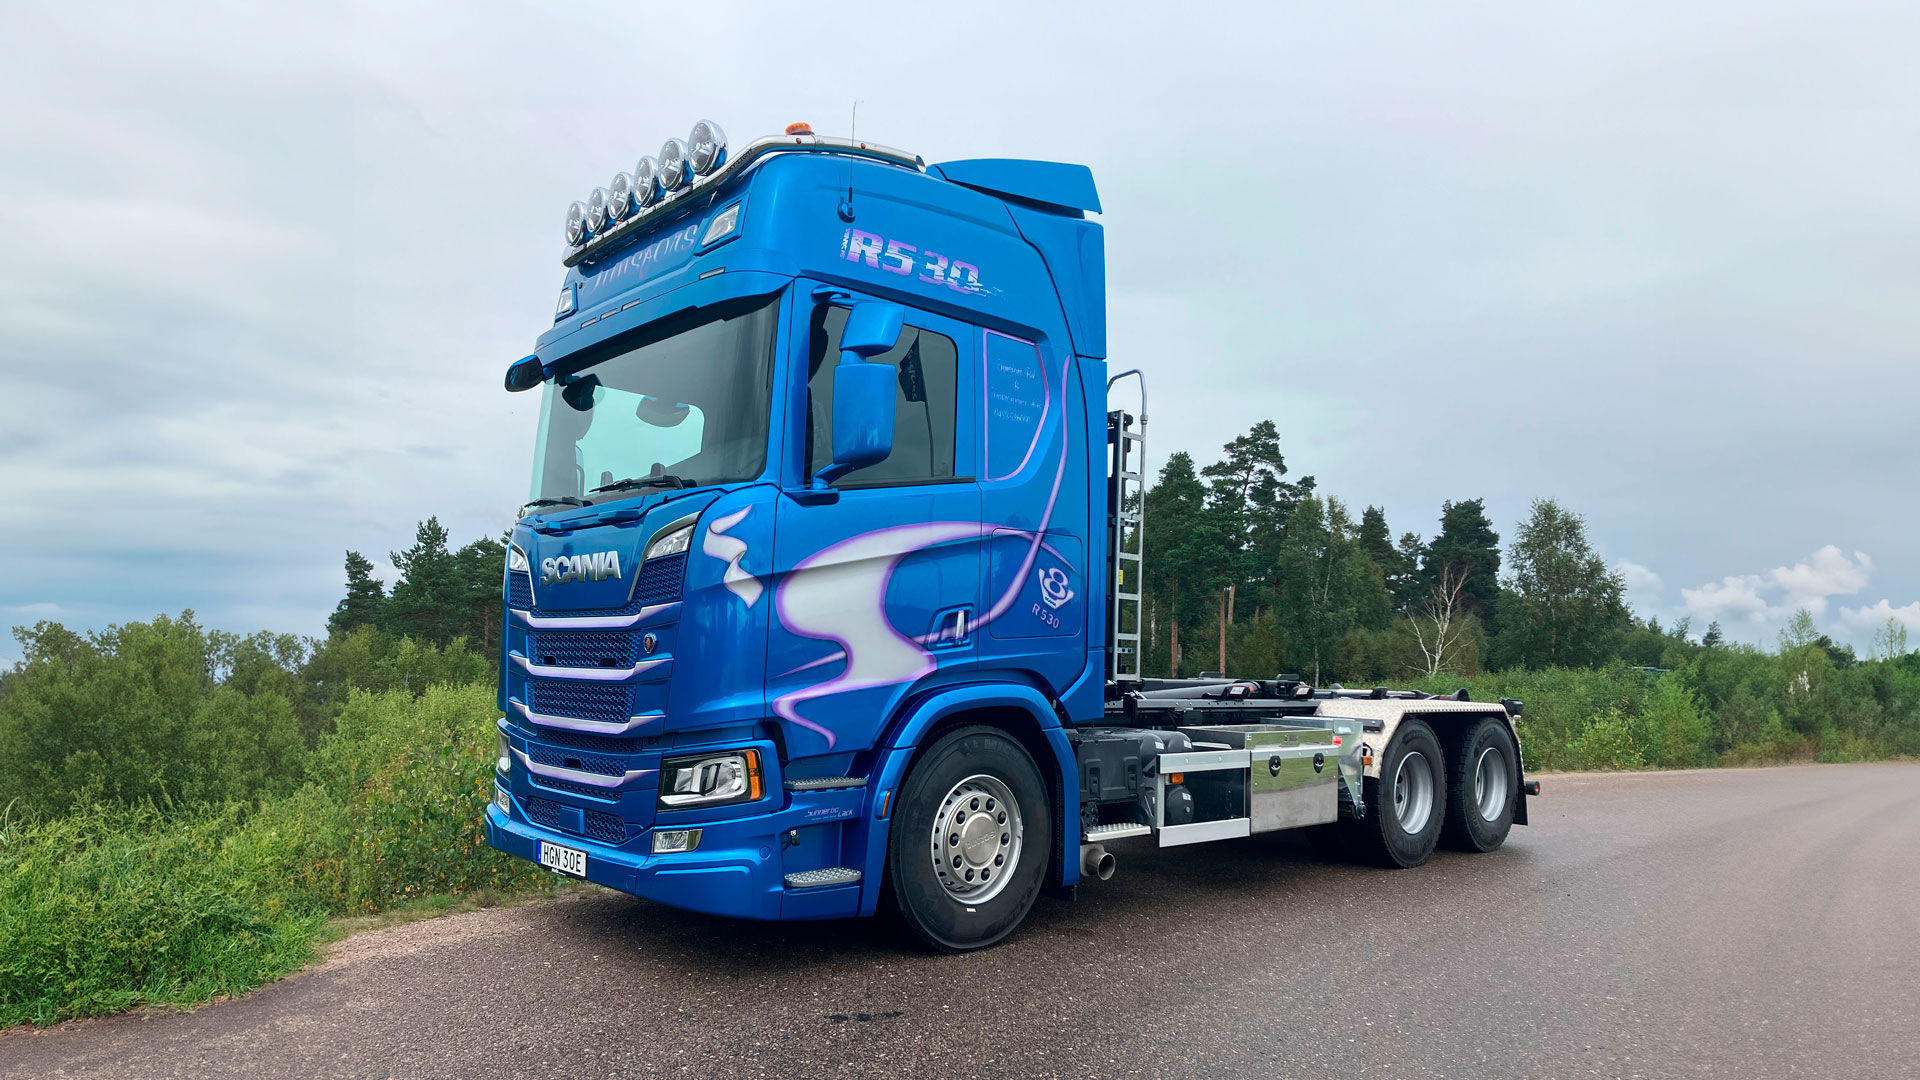 Nylevererad Scania R530 till Timsfors Bil & Traktor. Atteviks Lastbilar AB i Älmhult stod för leveransen.